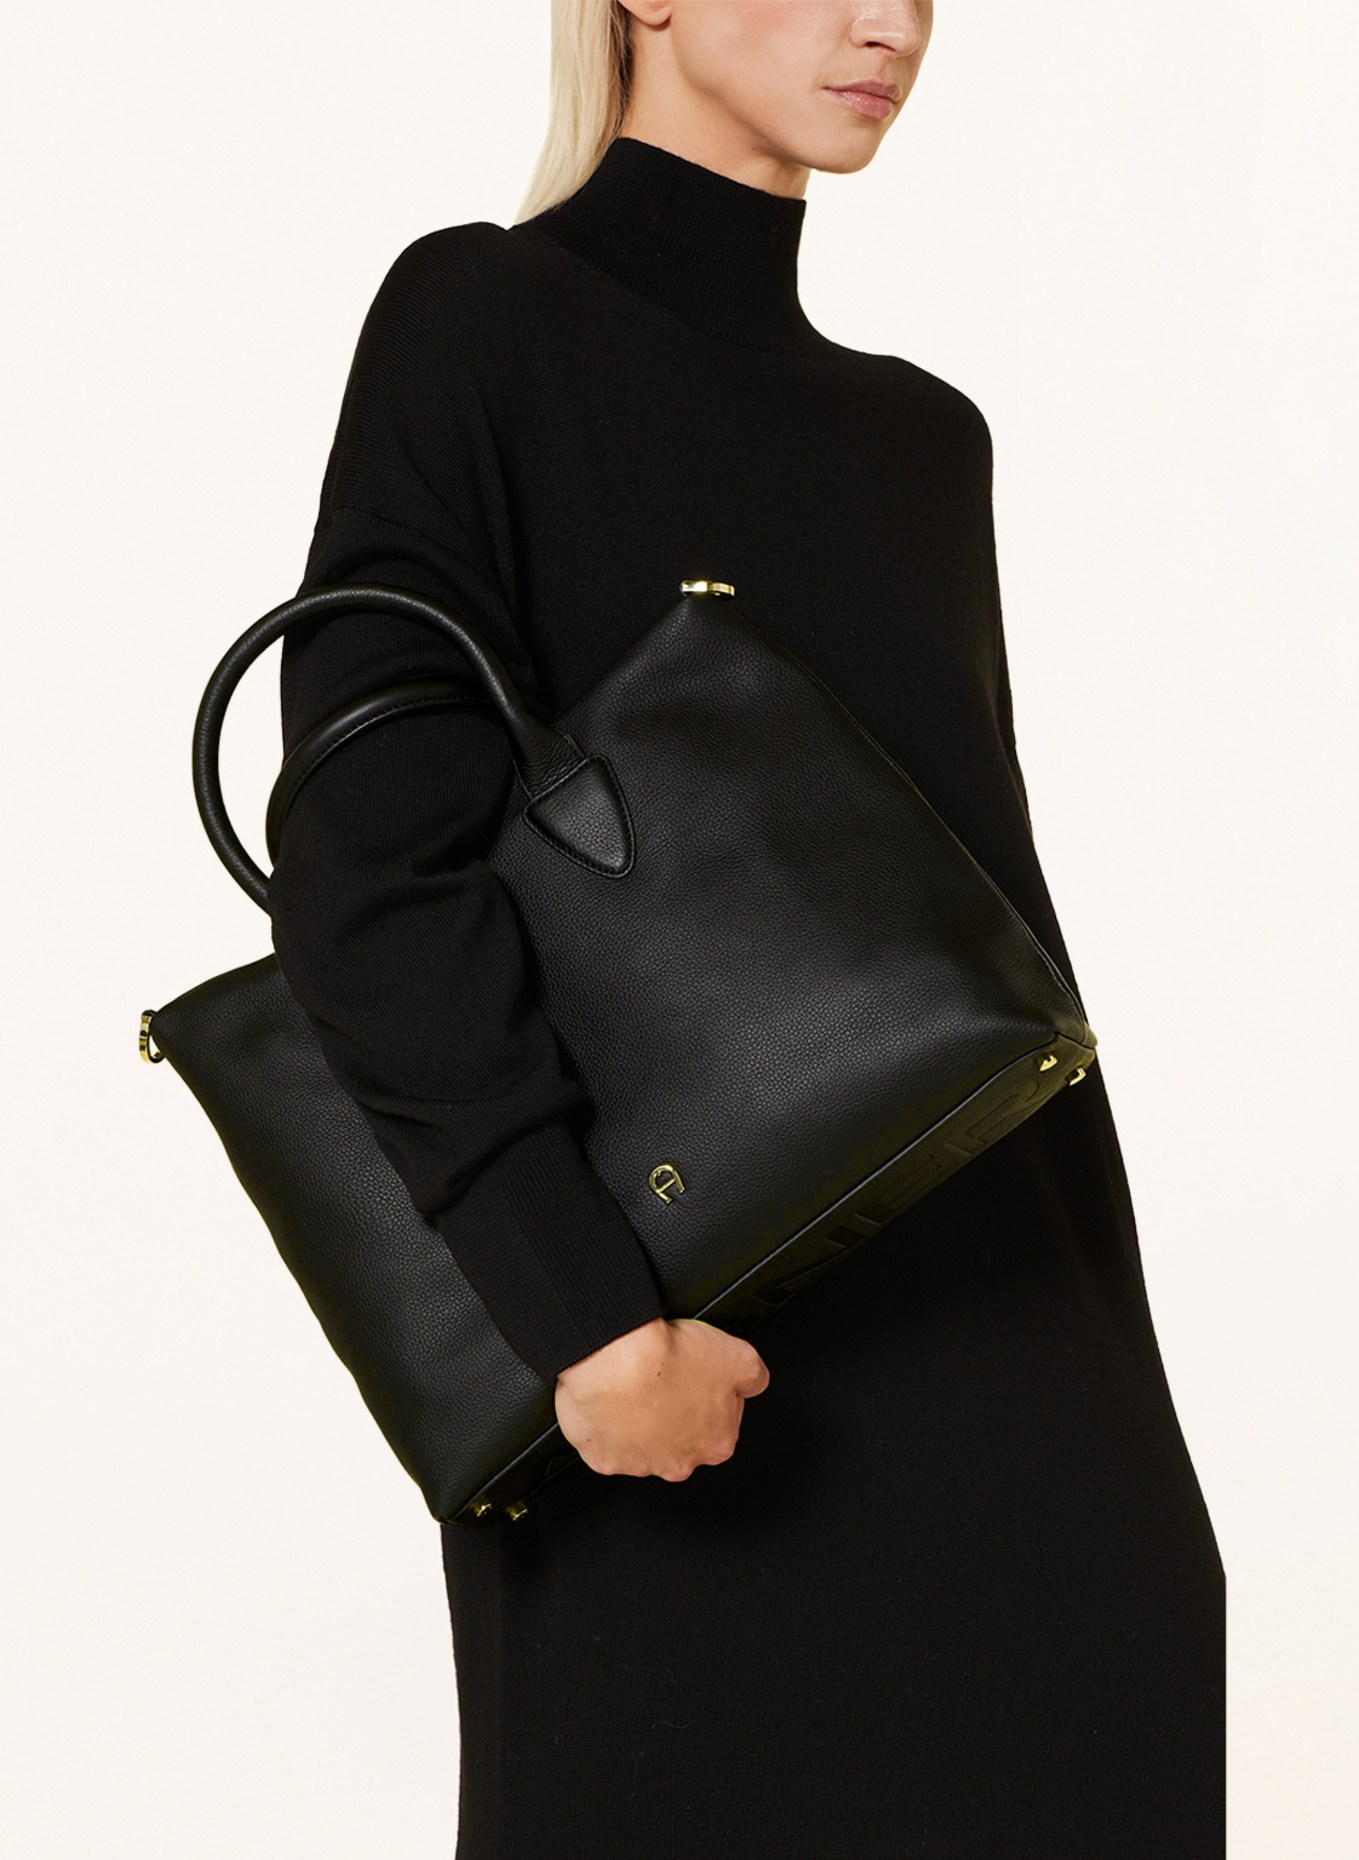 AIGNER Handbag, Color: BLACK (Image 4)